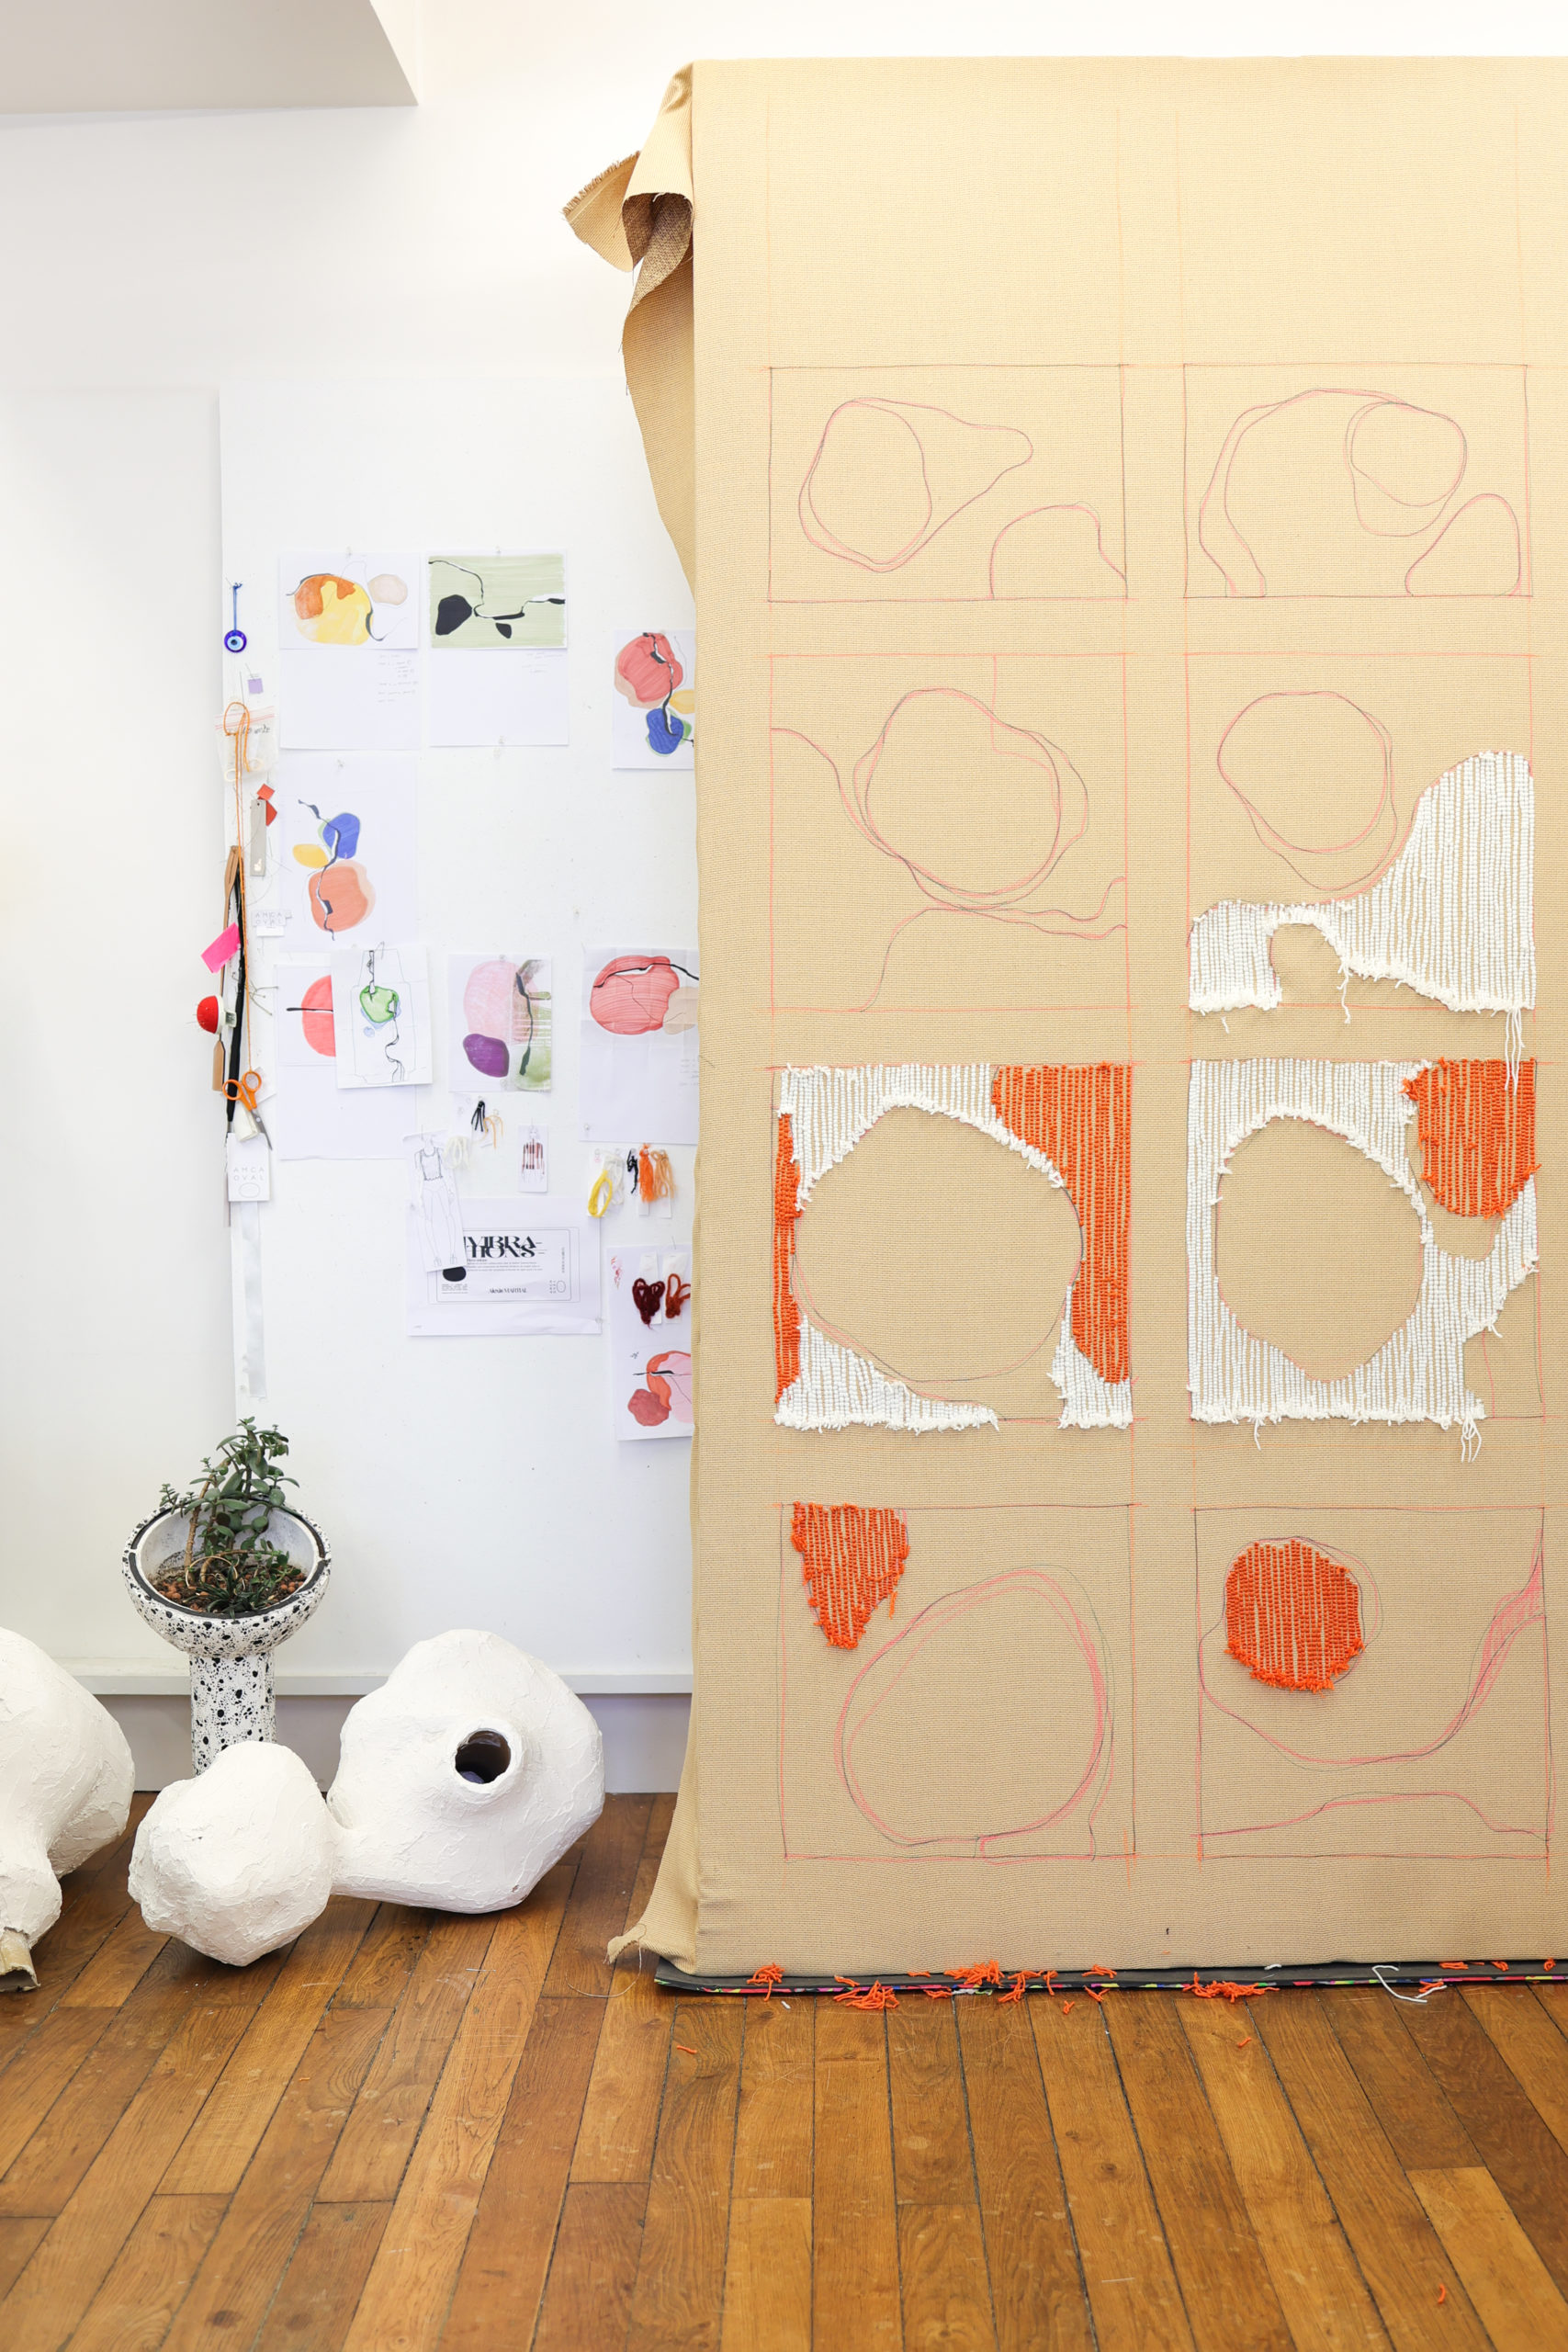 Mur avec test de création de tapis orange et blanc. Mur avec esquisse d'aquarelle multicolore accroché